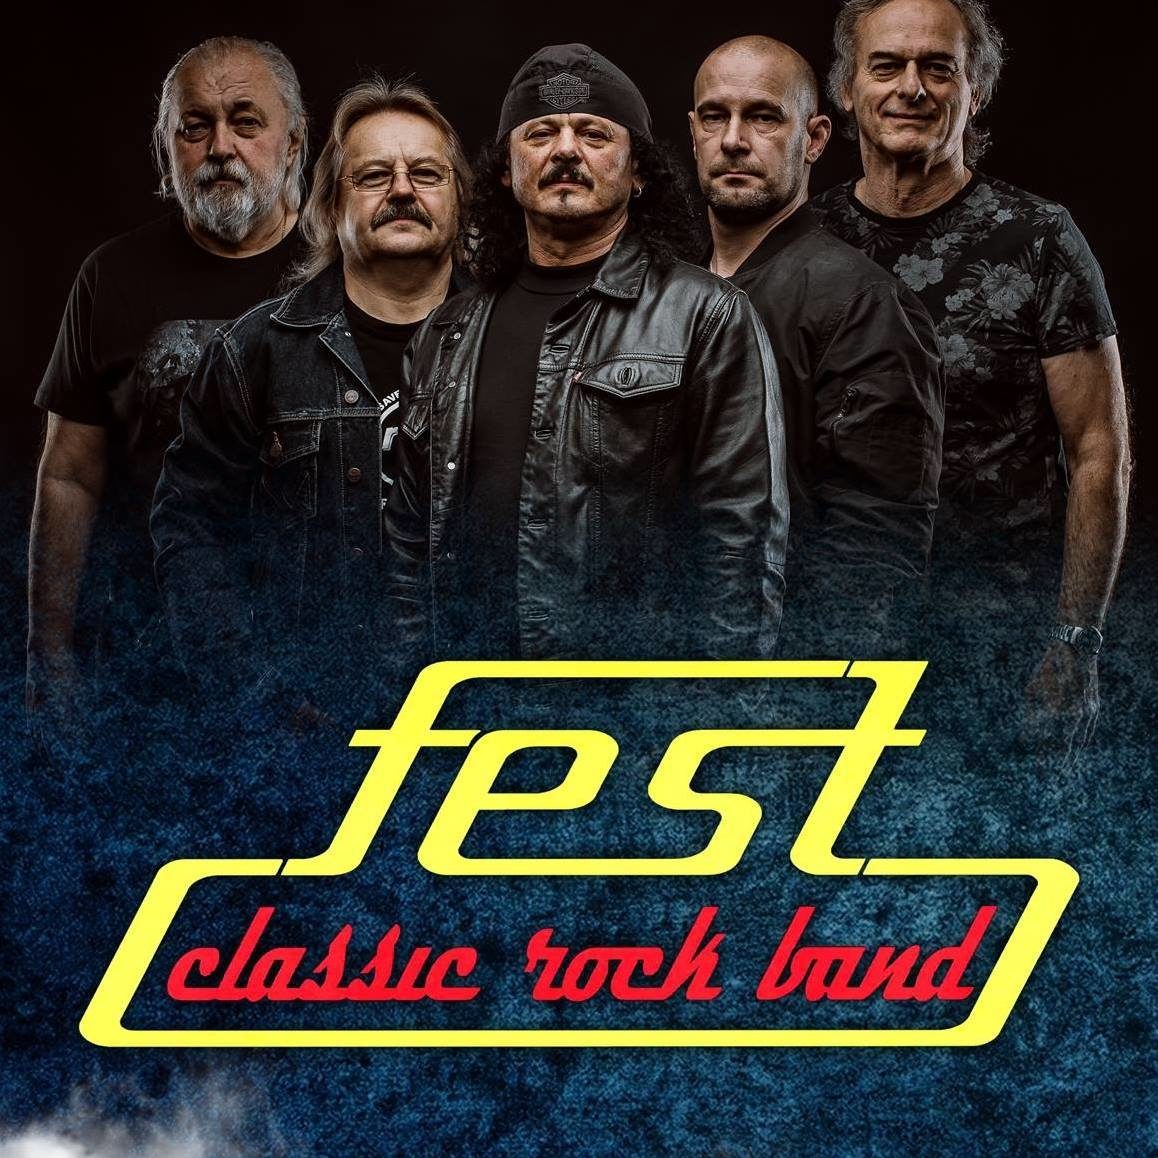 fest_classic_rock_band